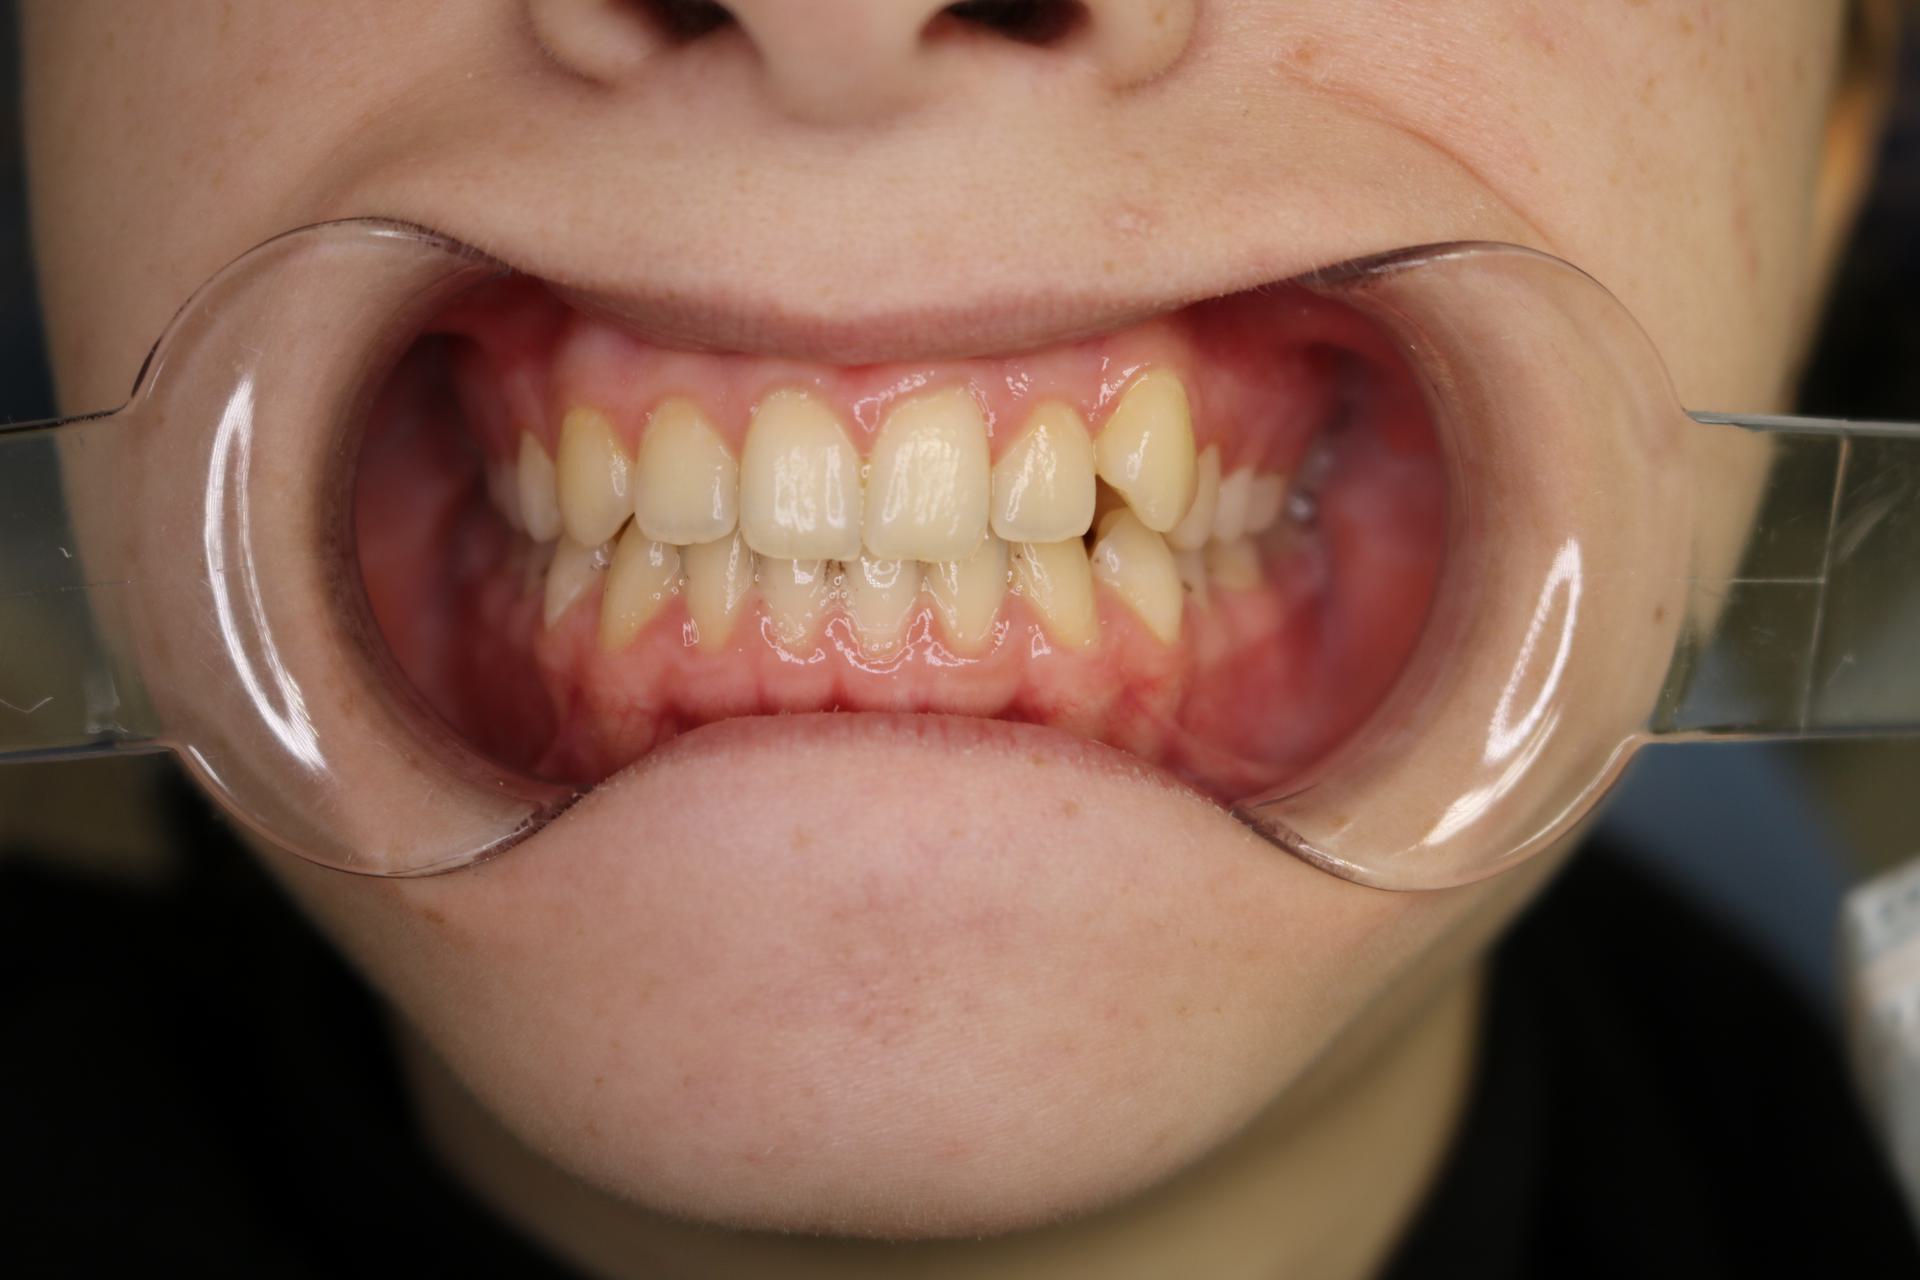 Сужение зубных рядов. Аномалия положения зубов. Девочка, 14 лет